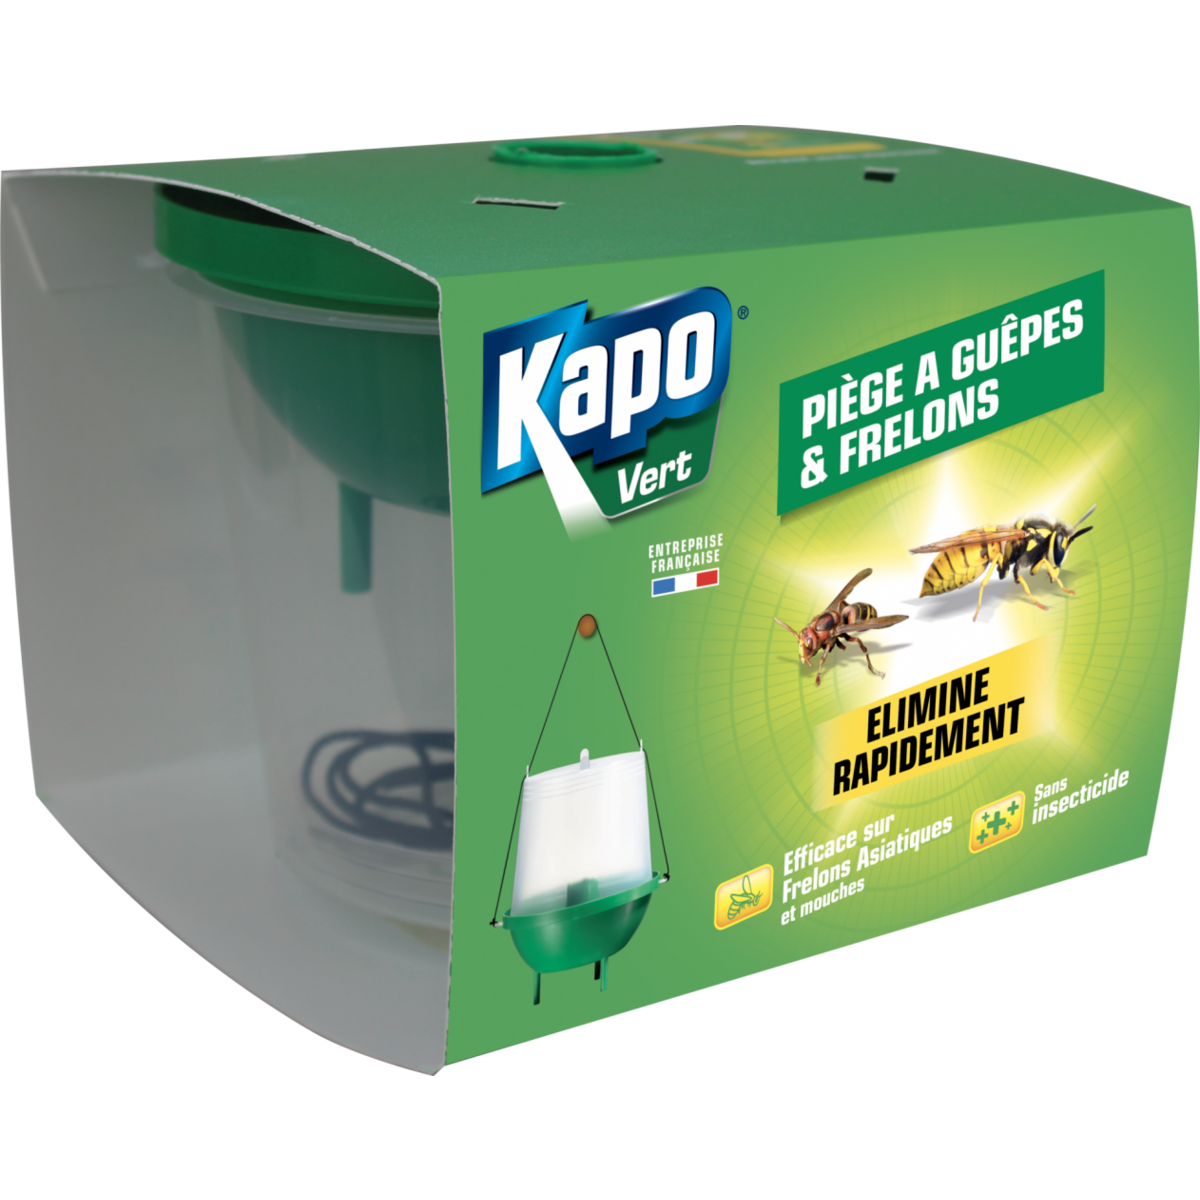 Kapo Piège à guêpes et frelons, KAPO